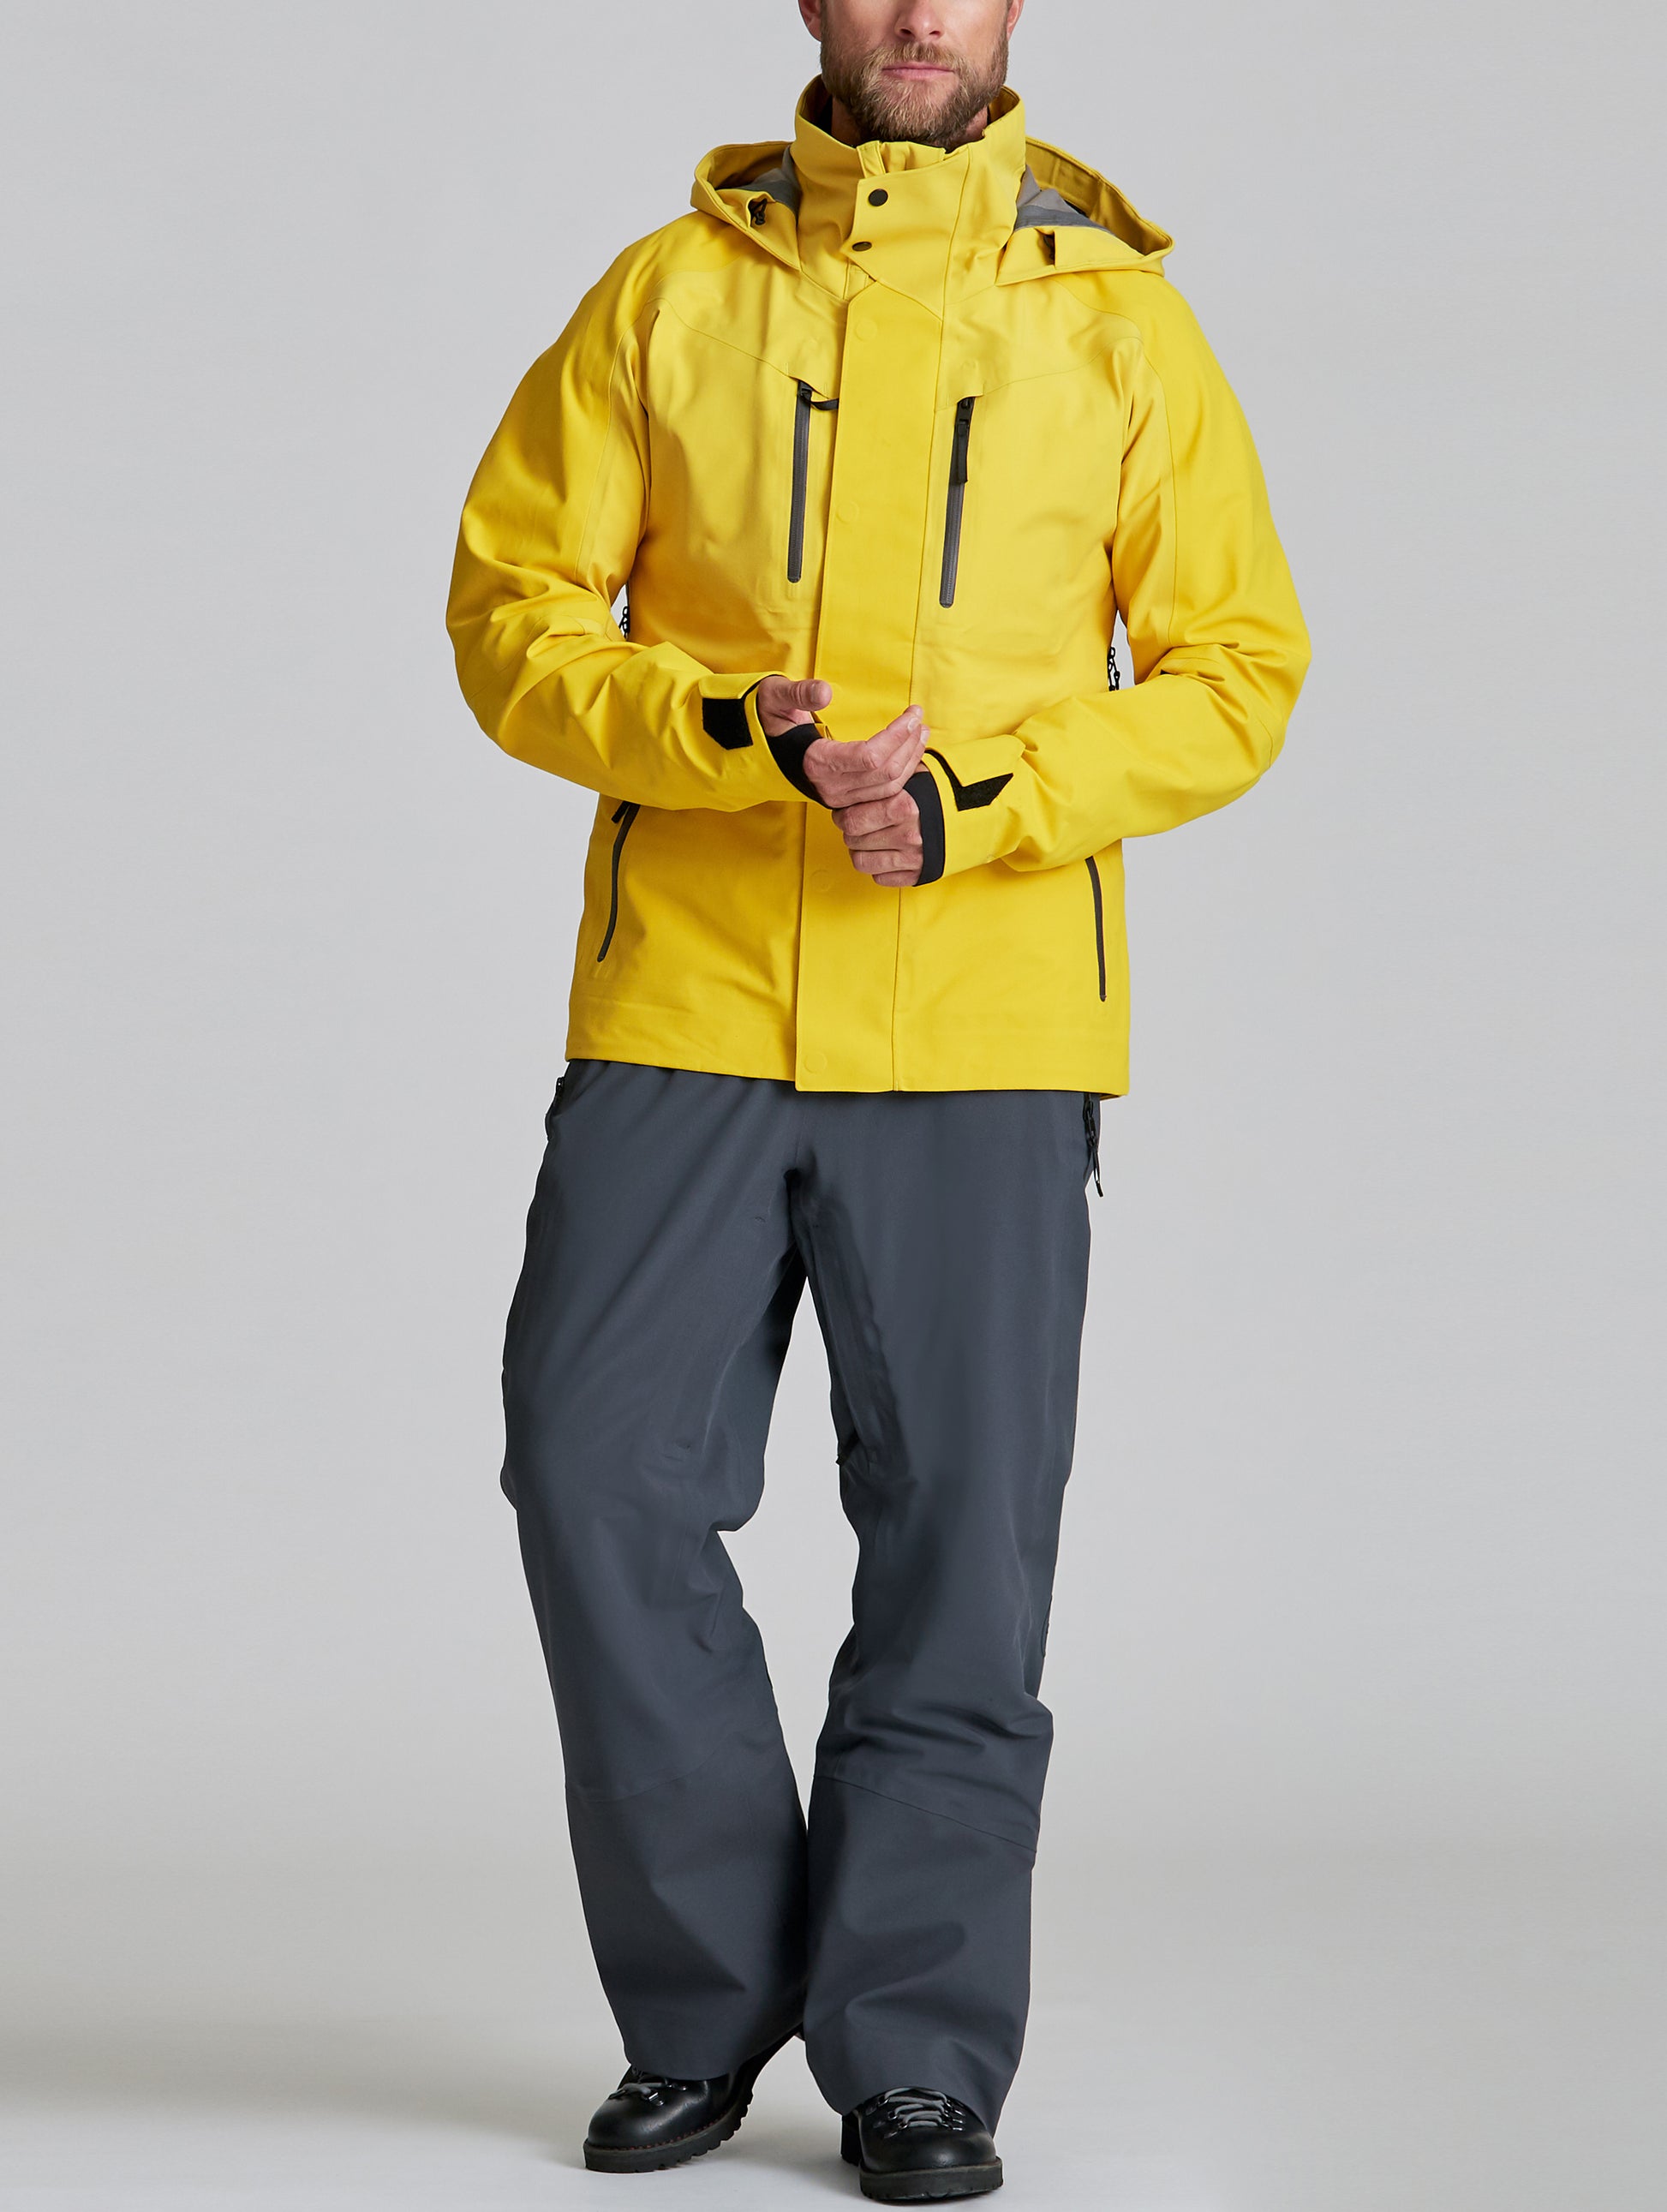 man wearing yellow snow jacket